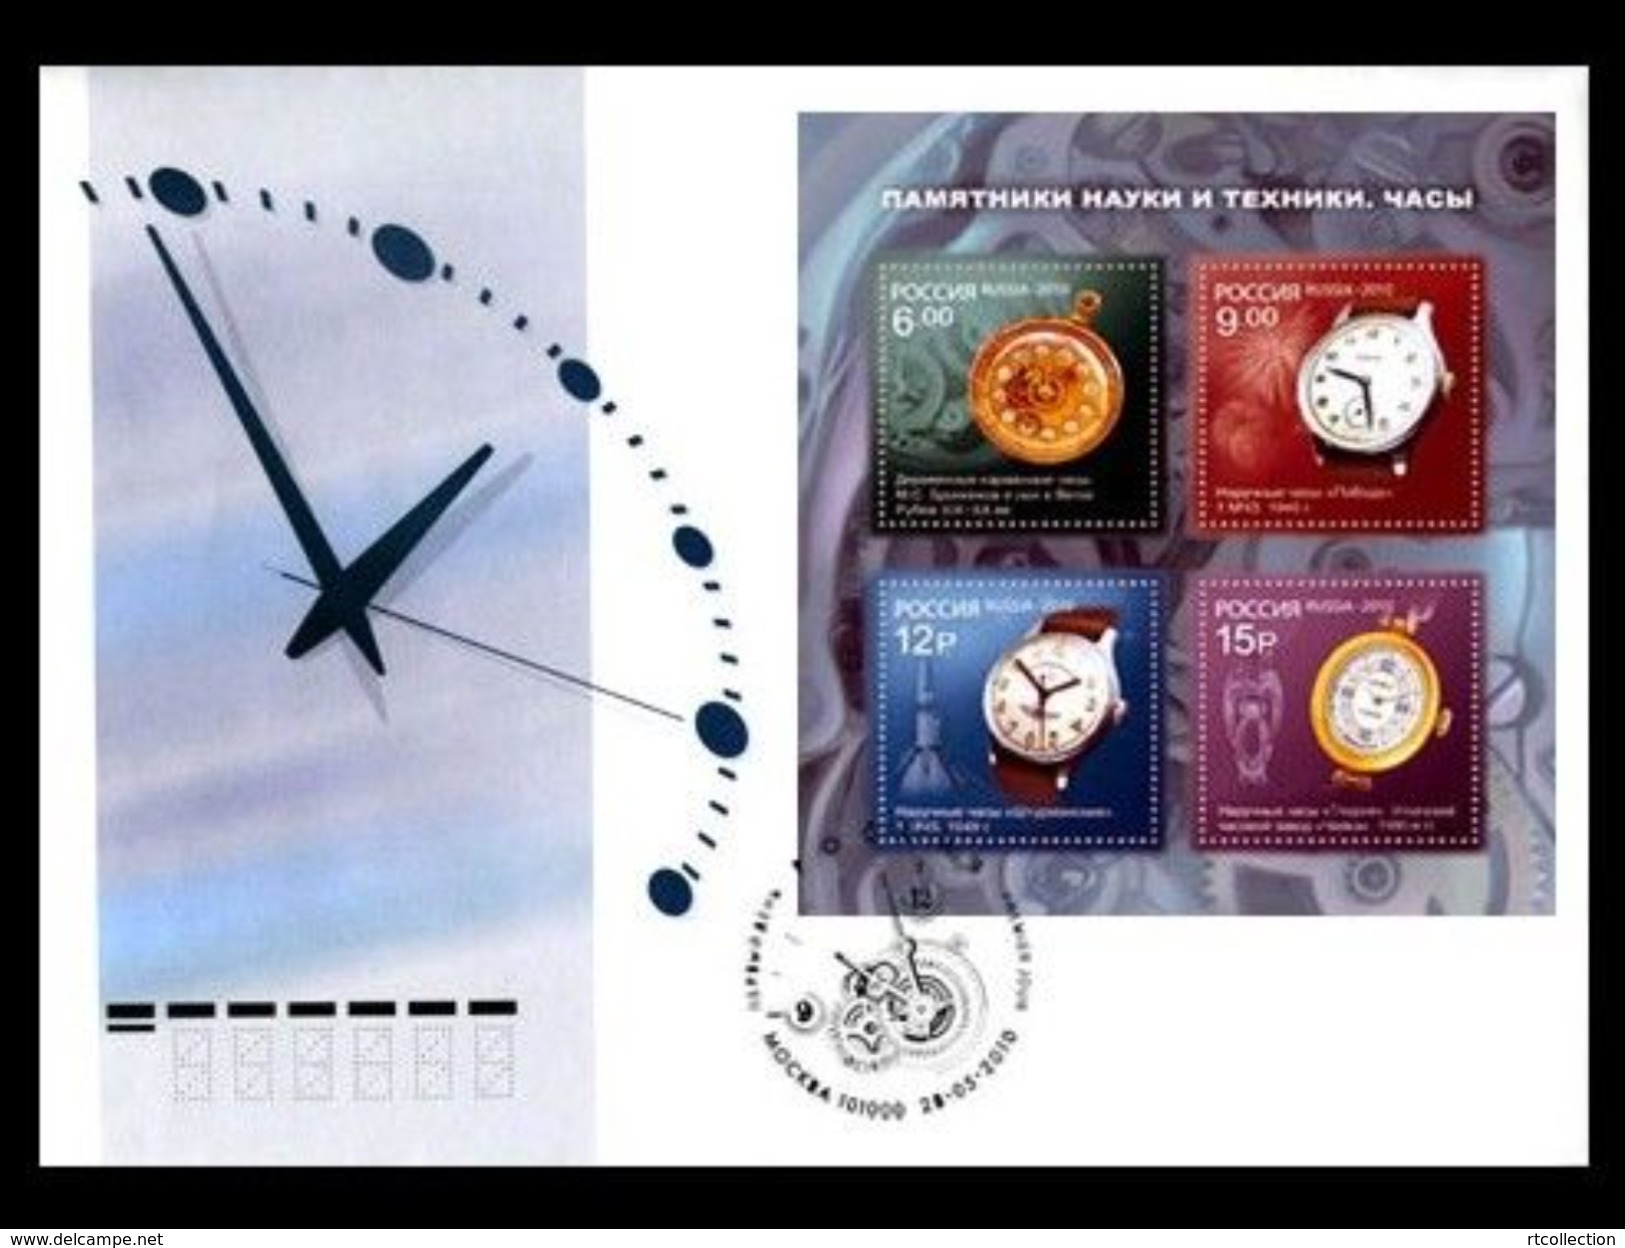 Russia 2010 Souvenir Pack FDC S/S Monuments Sciences Technology Watches Wrist Clock Artifact Stamps Michel BL134 SC 7216 - Verzamelingen